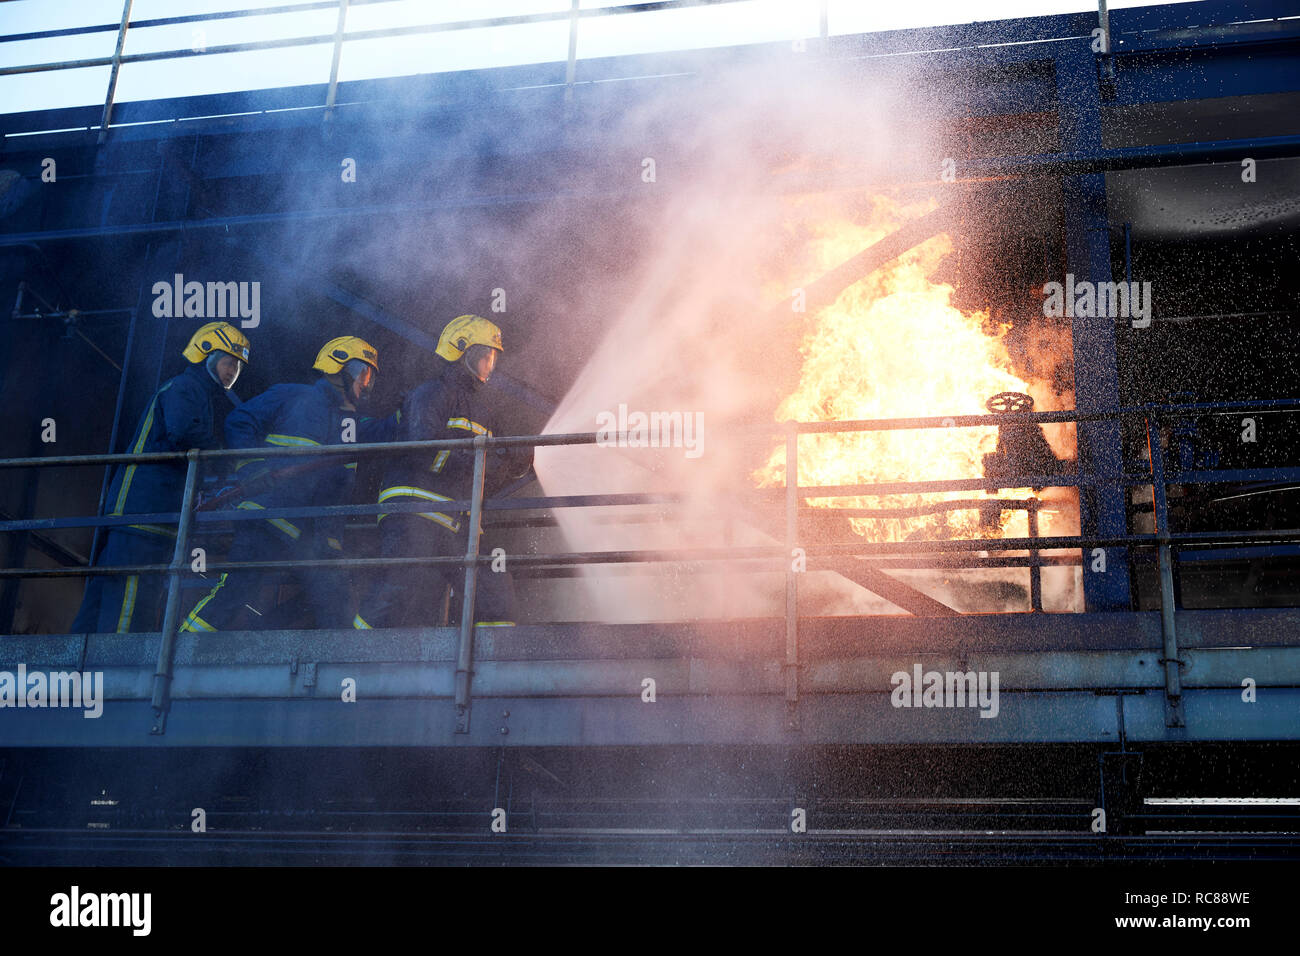 La formación de los Bomberos para extinguir el incendio en el edificio en llamas, Darlington, REINO UNIDO Foto de stock